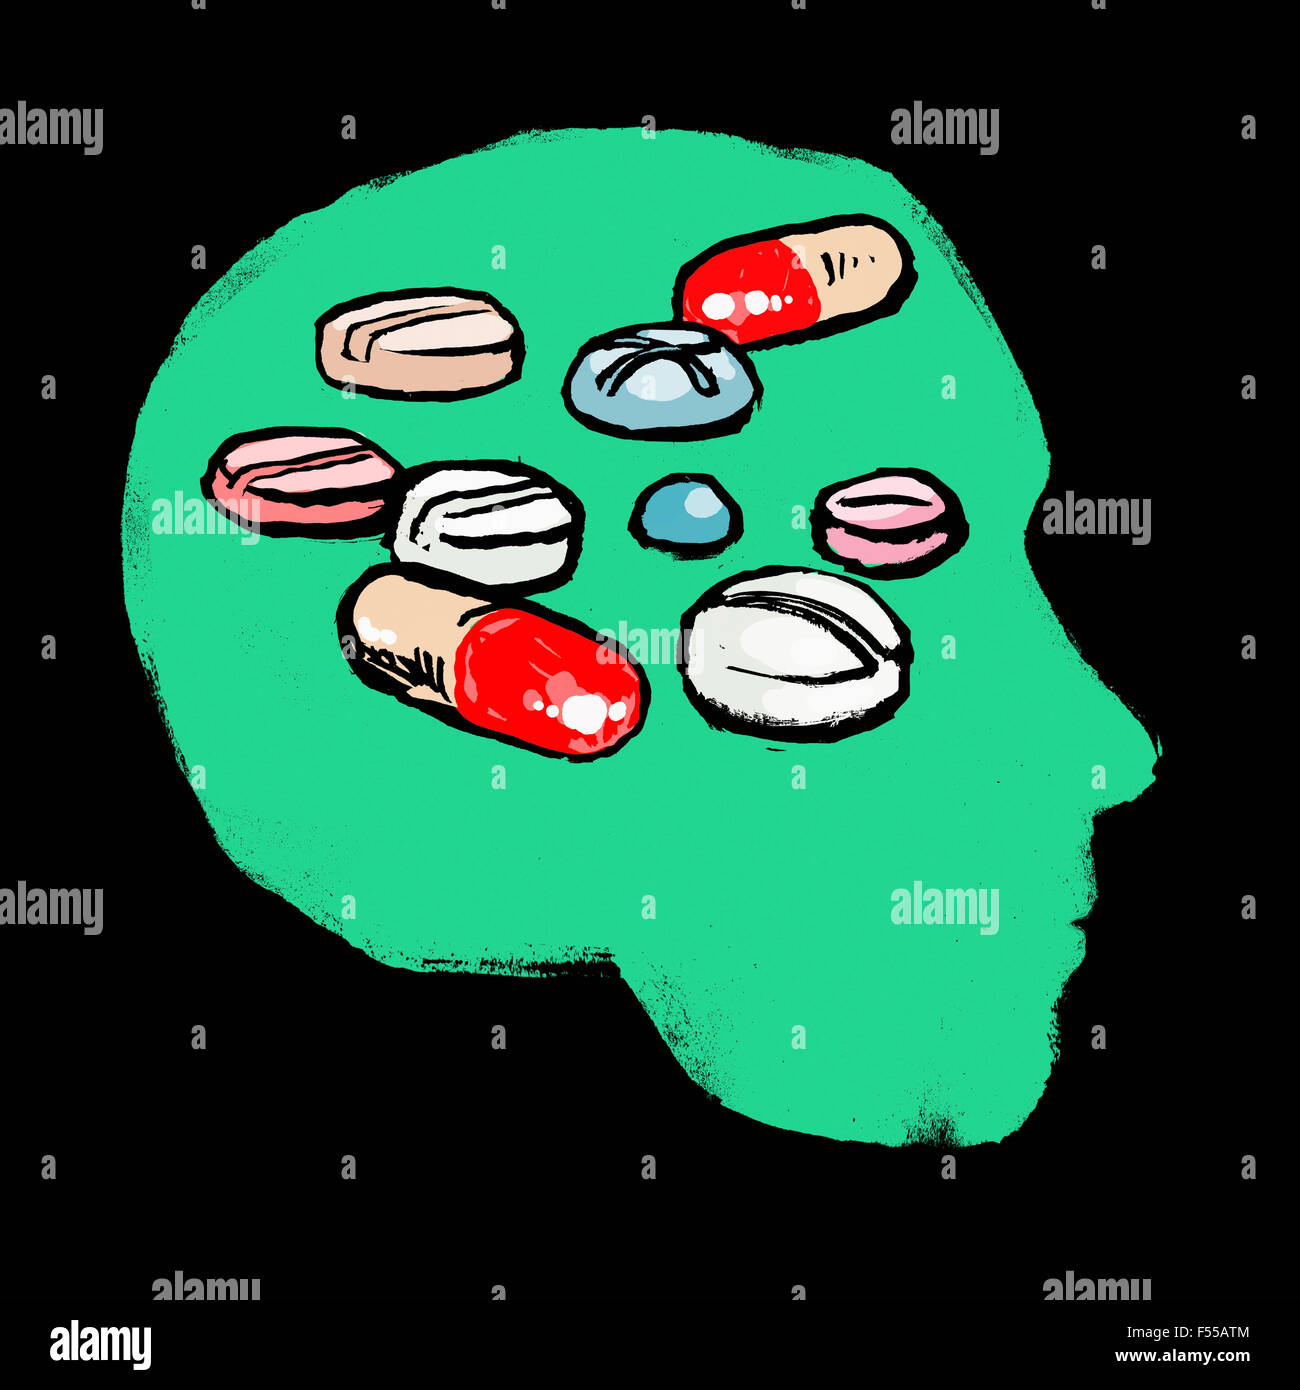 Illustration de médicaments dans la tête humaine sur fond noir Banque D'Images